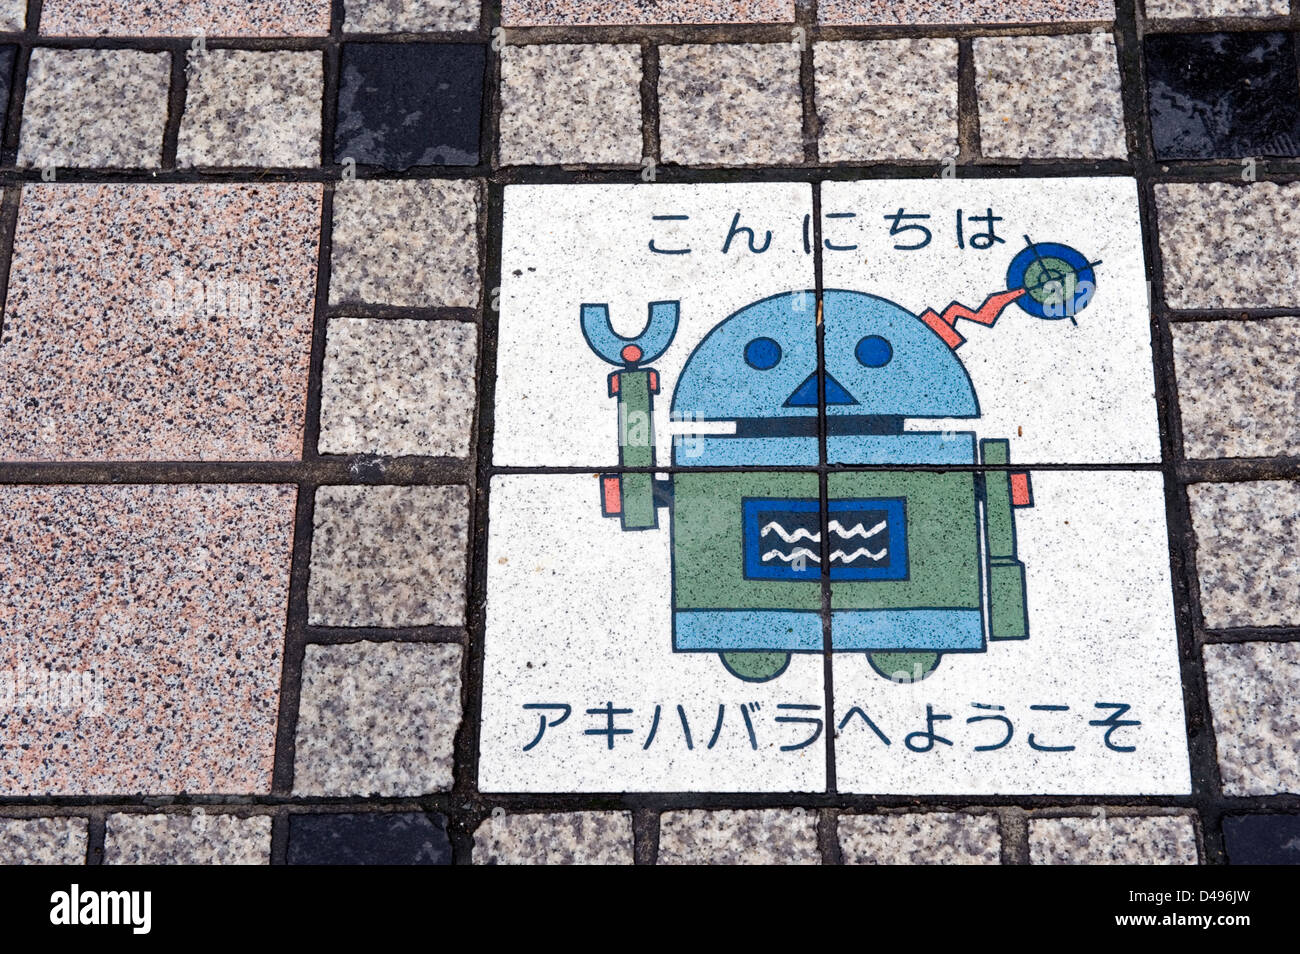 Sur le trottoir de l'oeuvre du robot dit "Konnichiwa" (Bonjour), 'Akihabara Yokoso' (Bienvenue à Akihabara à Tokyo), Banque D'Images